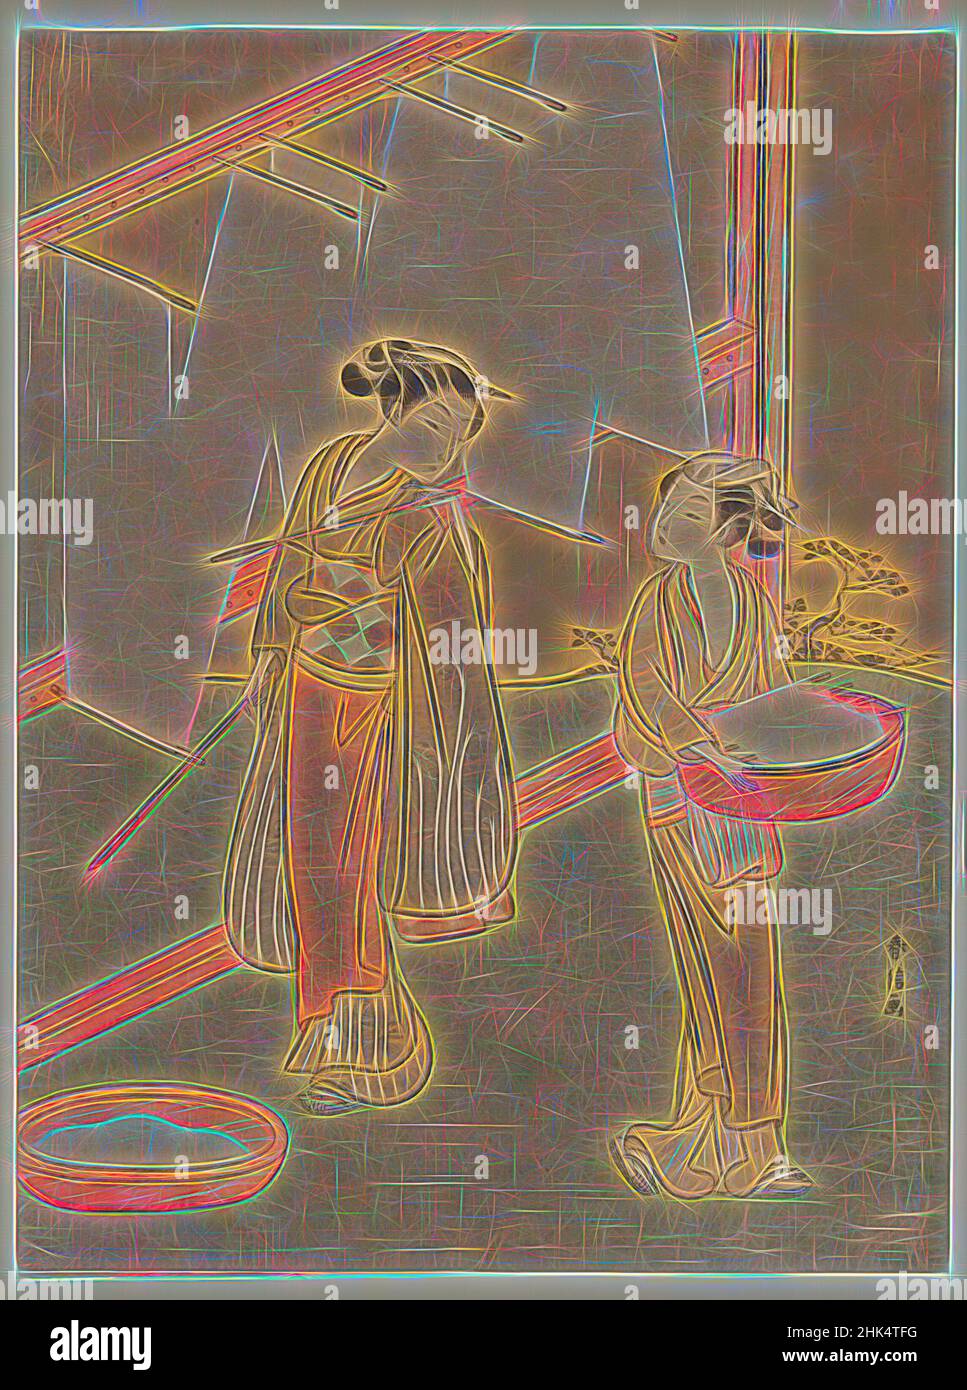 Inspiriert von Young Girl and Servant Drying Japanese Fine Noodles, Suzuki Harunobu, Japanisch, 1724-1770, Farbholzschnitt auf Papier, Japan, ca. 1766, Edo-Periode, 10 9/16 x 7 7/8 Zoll, 26,8 x 20,1 cm, neu erfunden von Artotop. Klassische Kunst neu erfunden mit einem modernen Twist. Design von warmen fröhlichen Leuchten der Helligkeit und Lichtstrahl Strahlkraft. Fotografie inspiriert von Surrealismus und Futurismus, umarmt dynamische Energie der modernen Technologie, Bewegung, Geschwindigkeit und Kultur zu revolutionieren Stockfoto